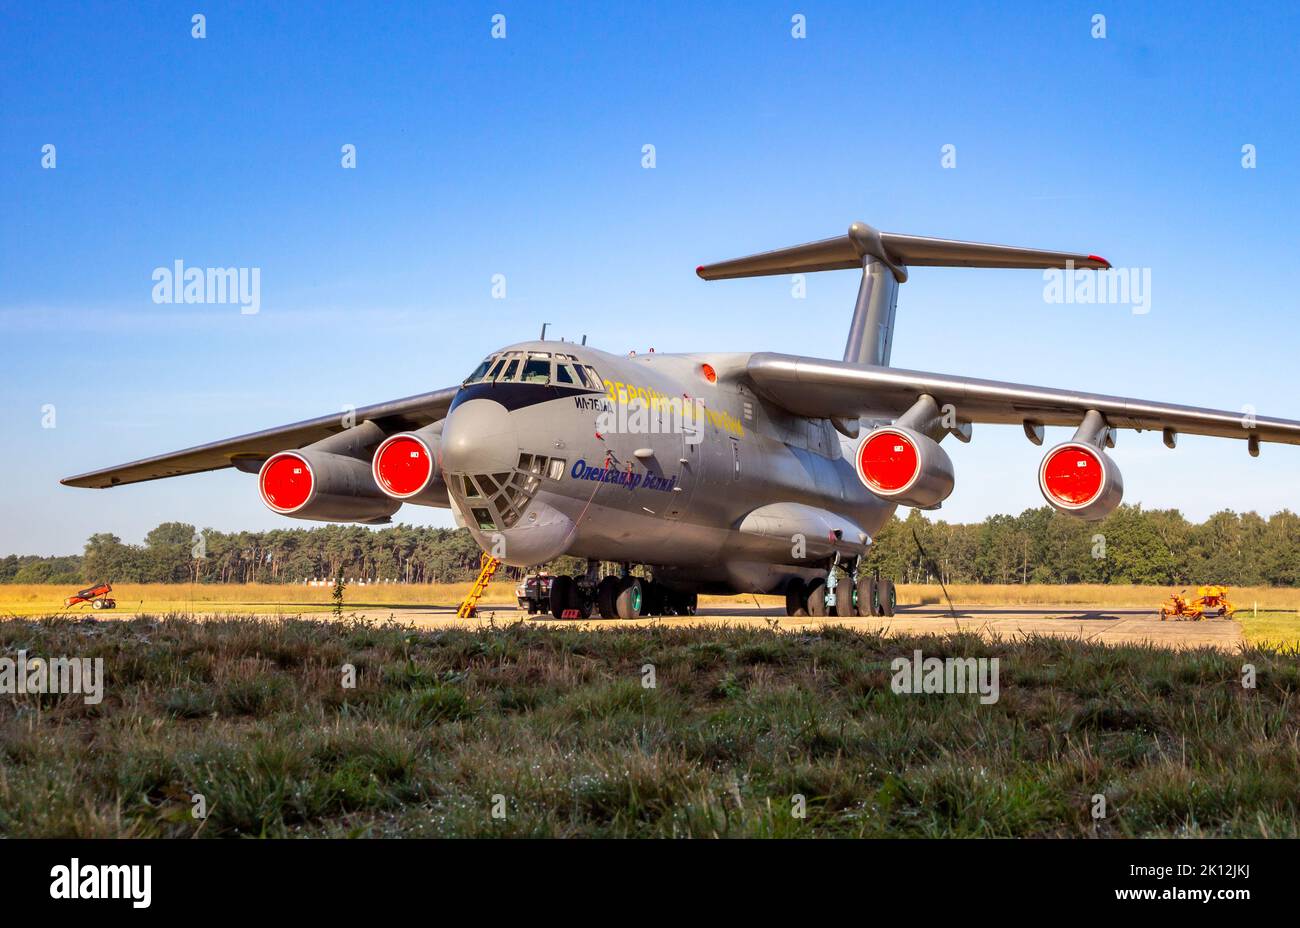 Avion de transport il-76 de la Force aérienne ukrainienne Ilyushin dans le tarmac de la base aérienne de Kleine-Brogel. Belgique - 14 septembre 2019 Banque D'Images